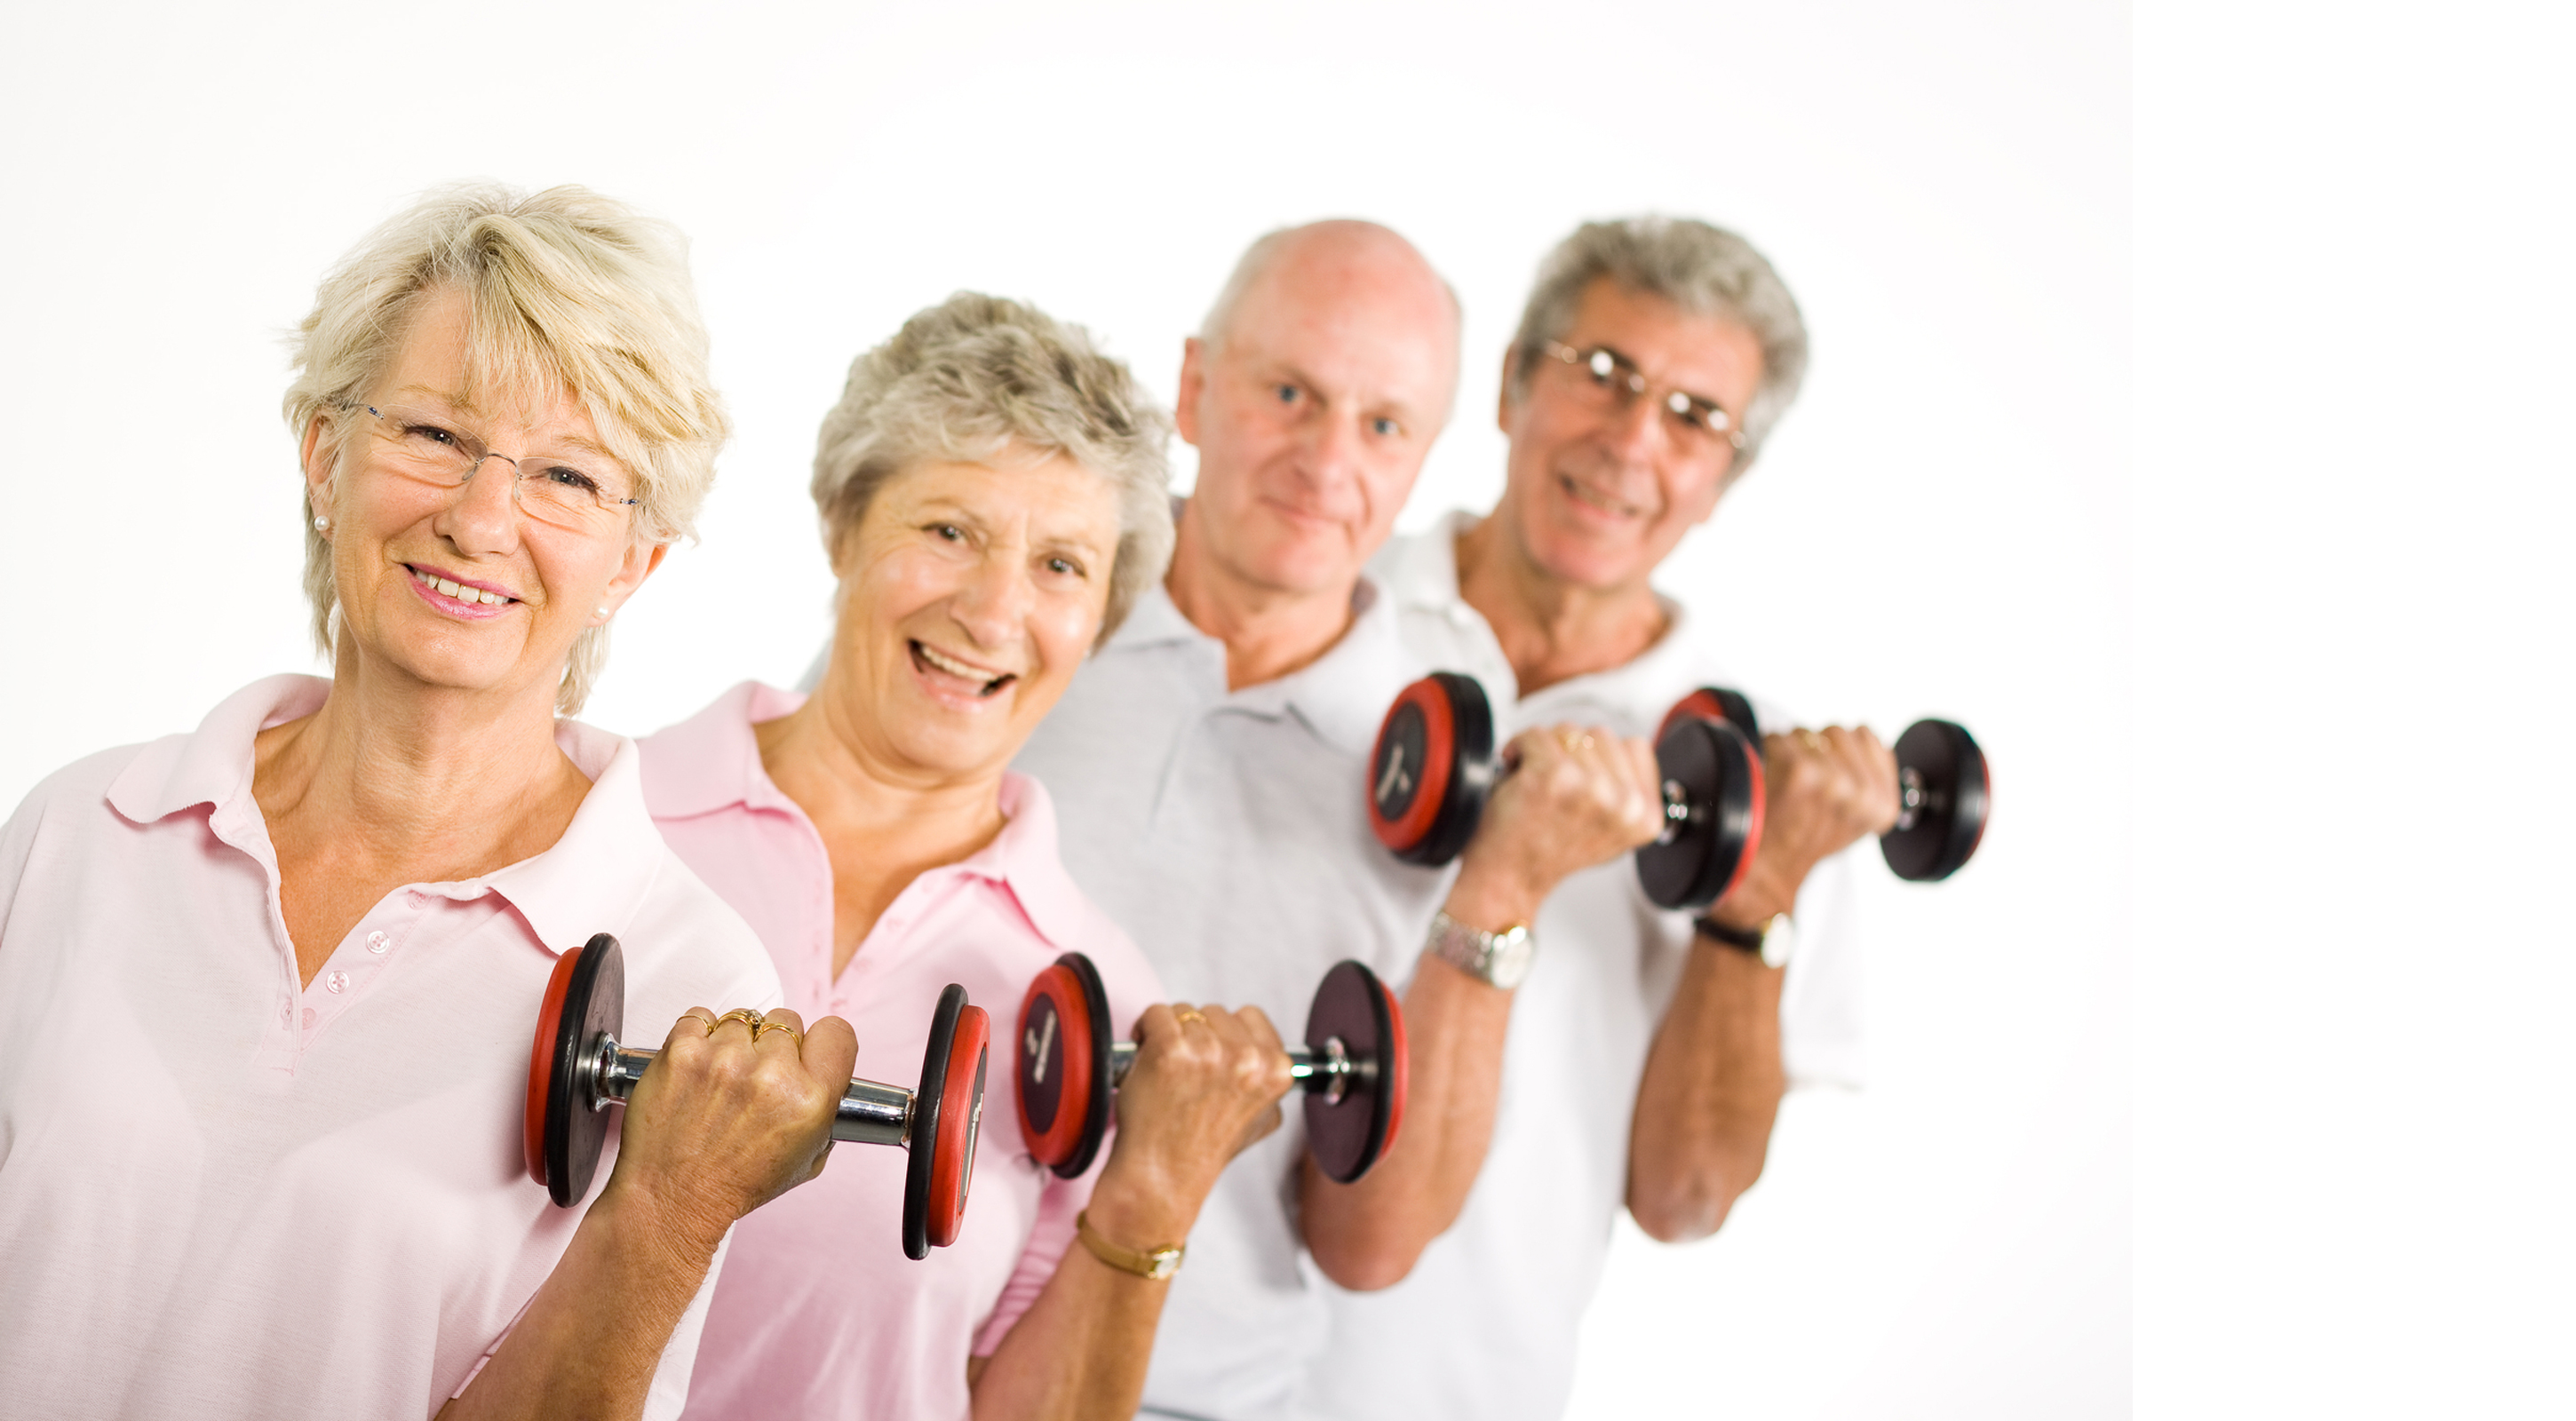 beneficial Pensacola exercise for osteoporosis